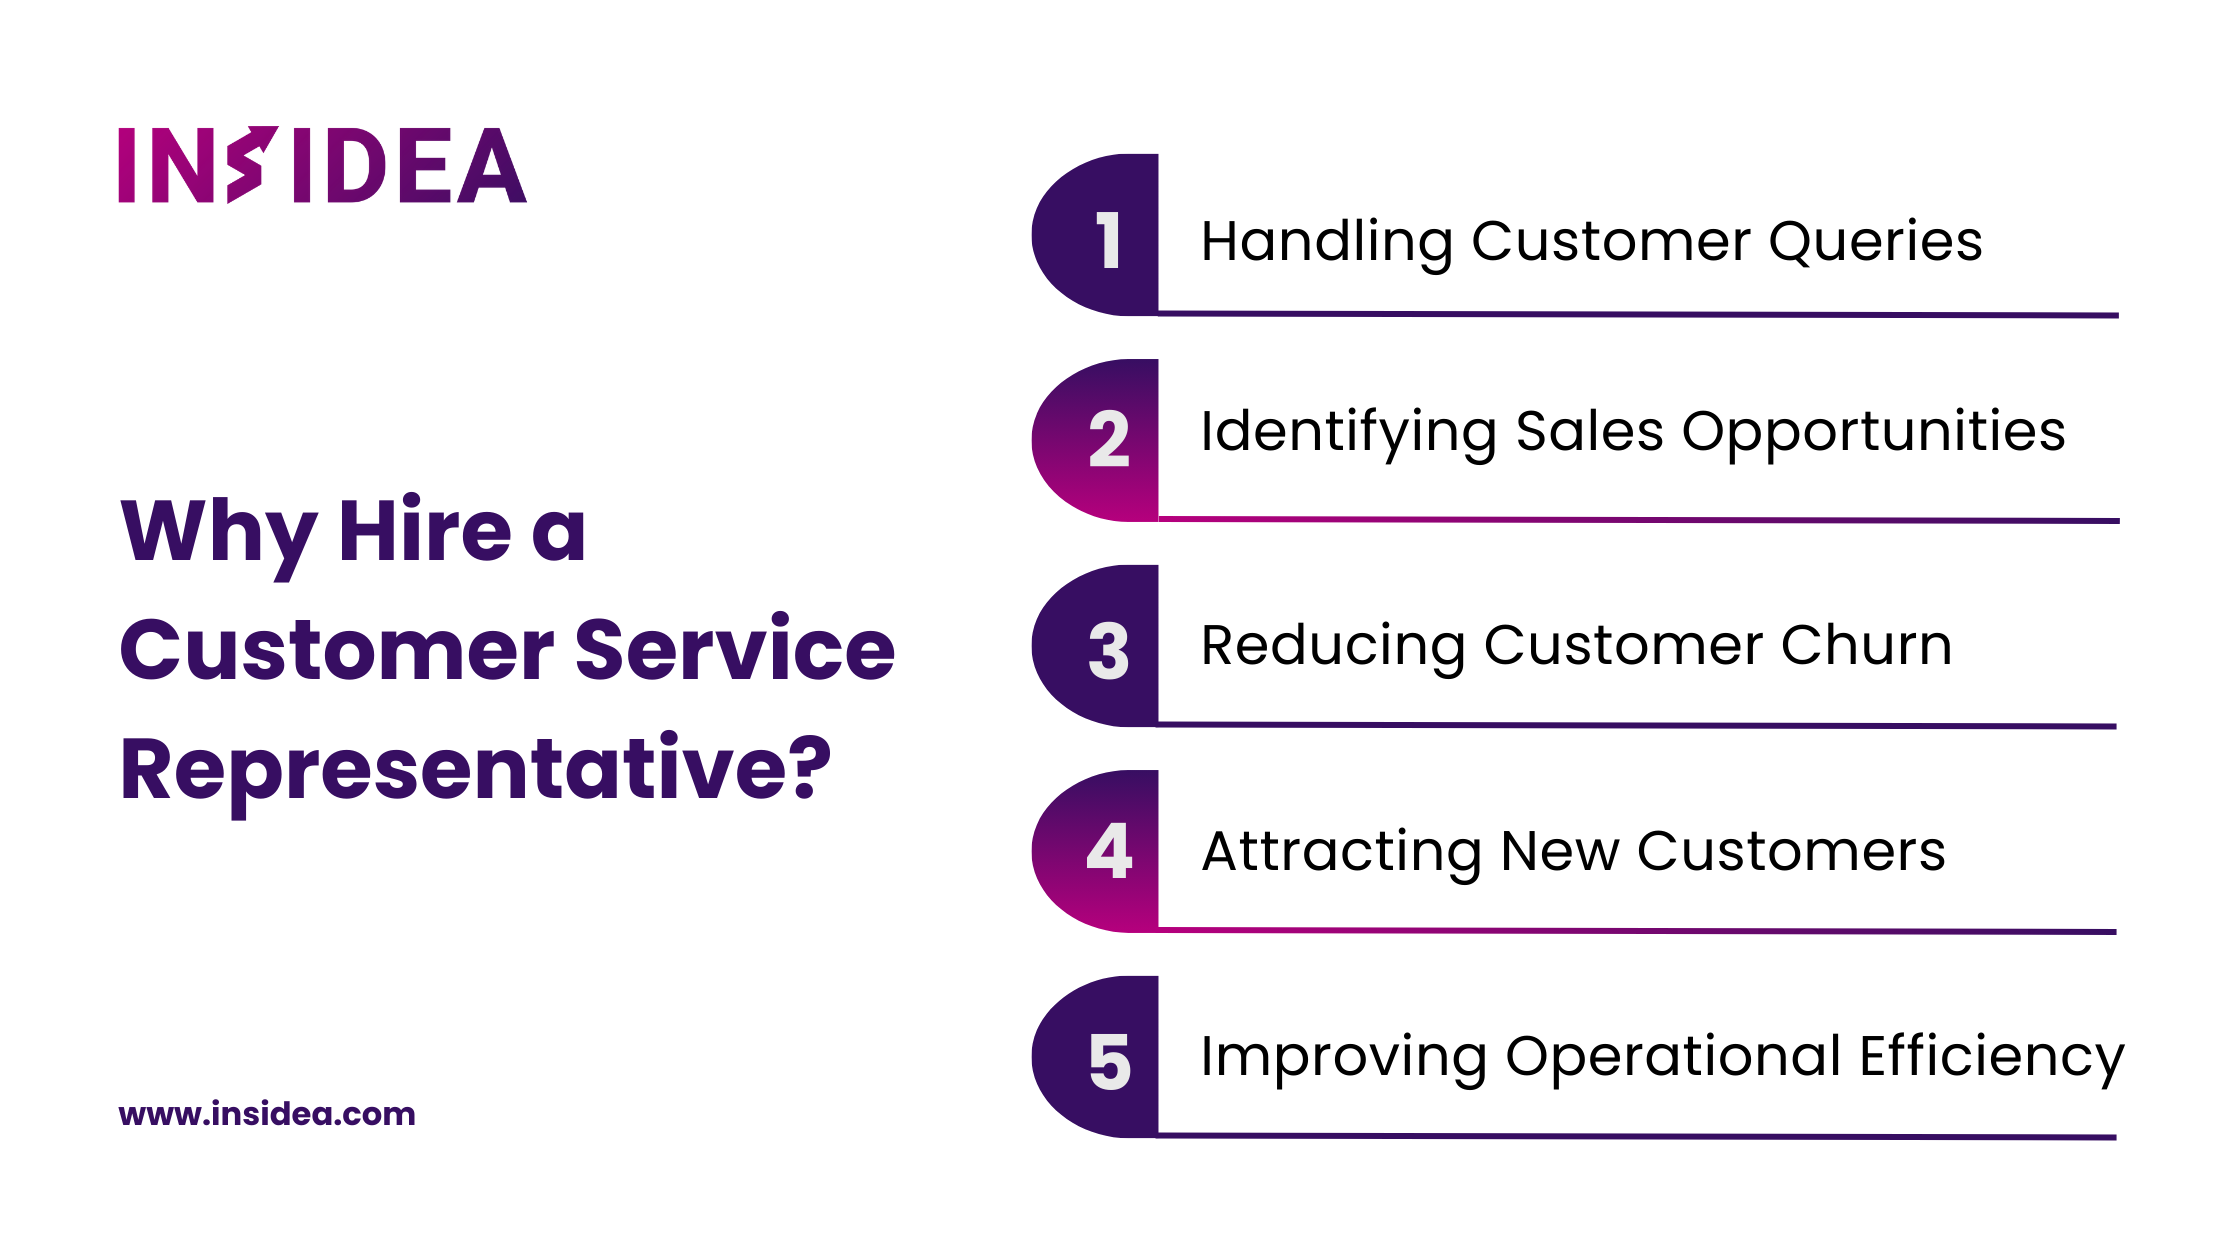 Why Hire a Customer Service Representative